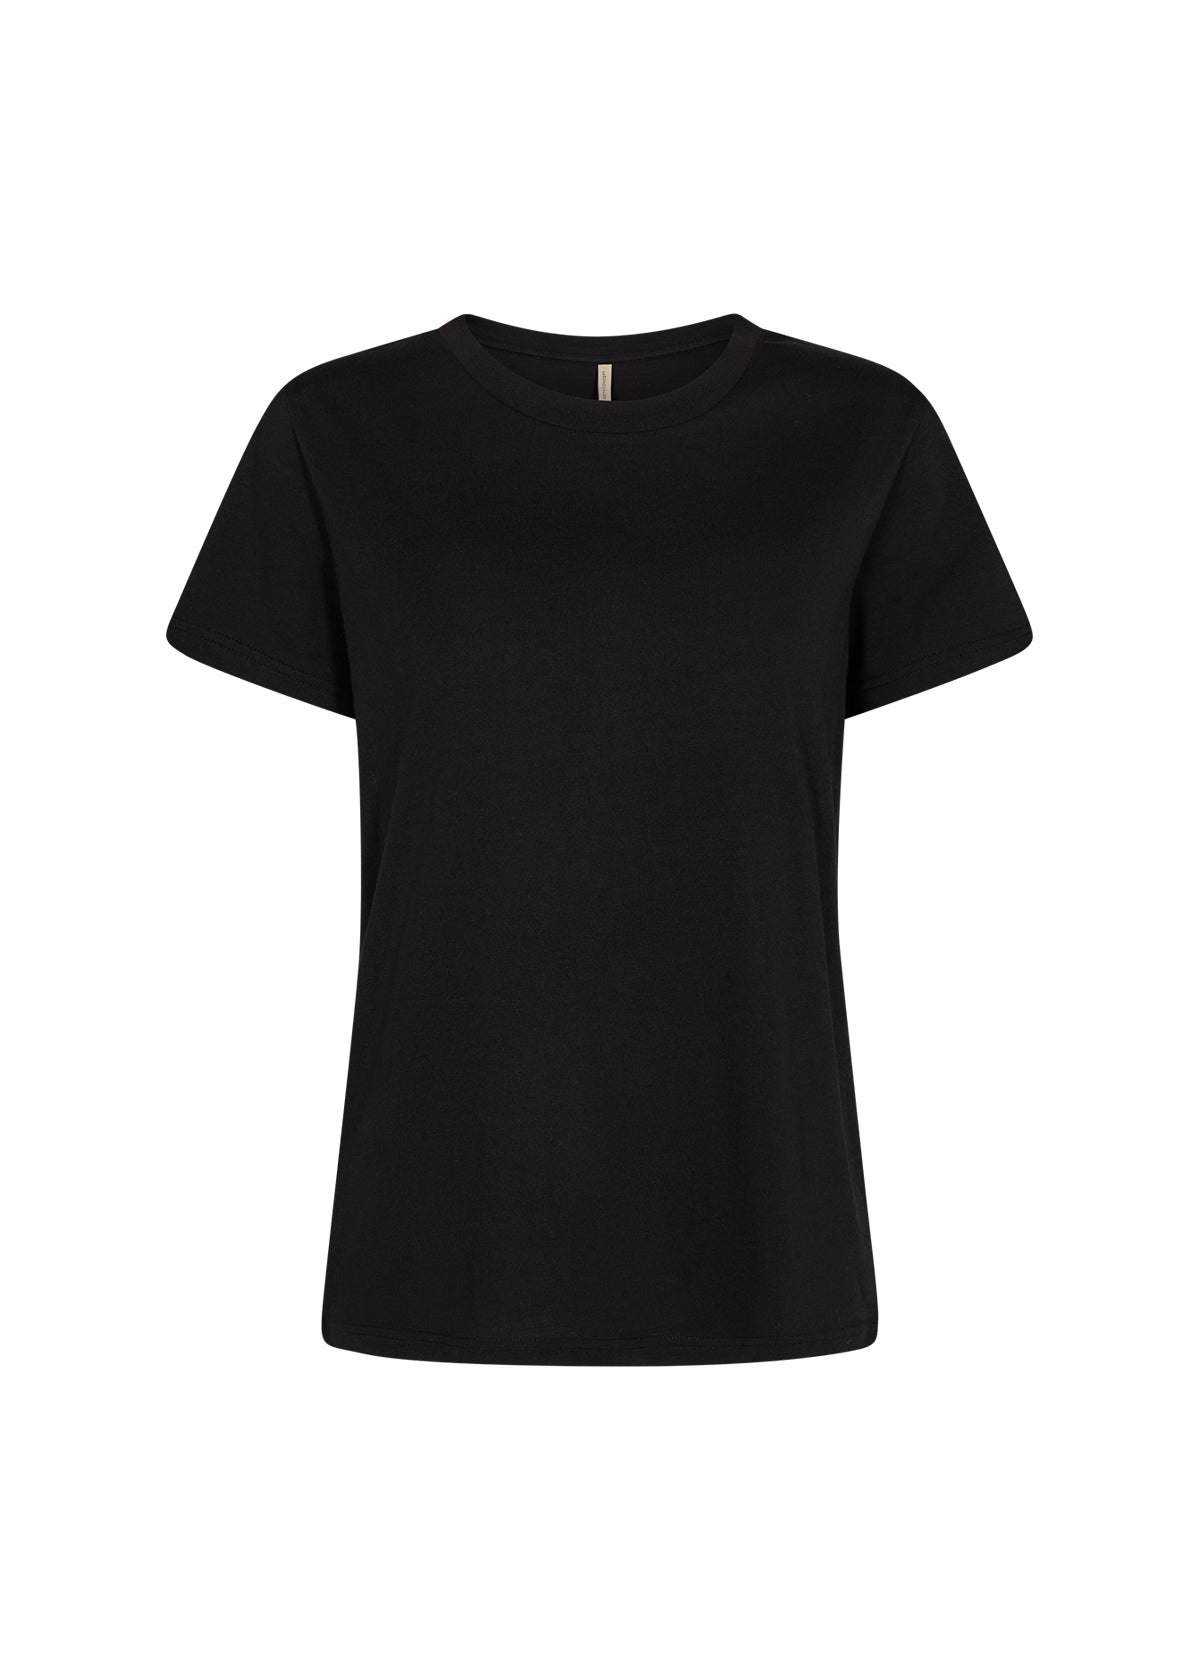 Soya Concept - Derby Cotton Black T-Shirt